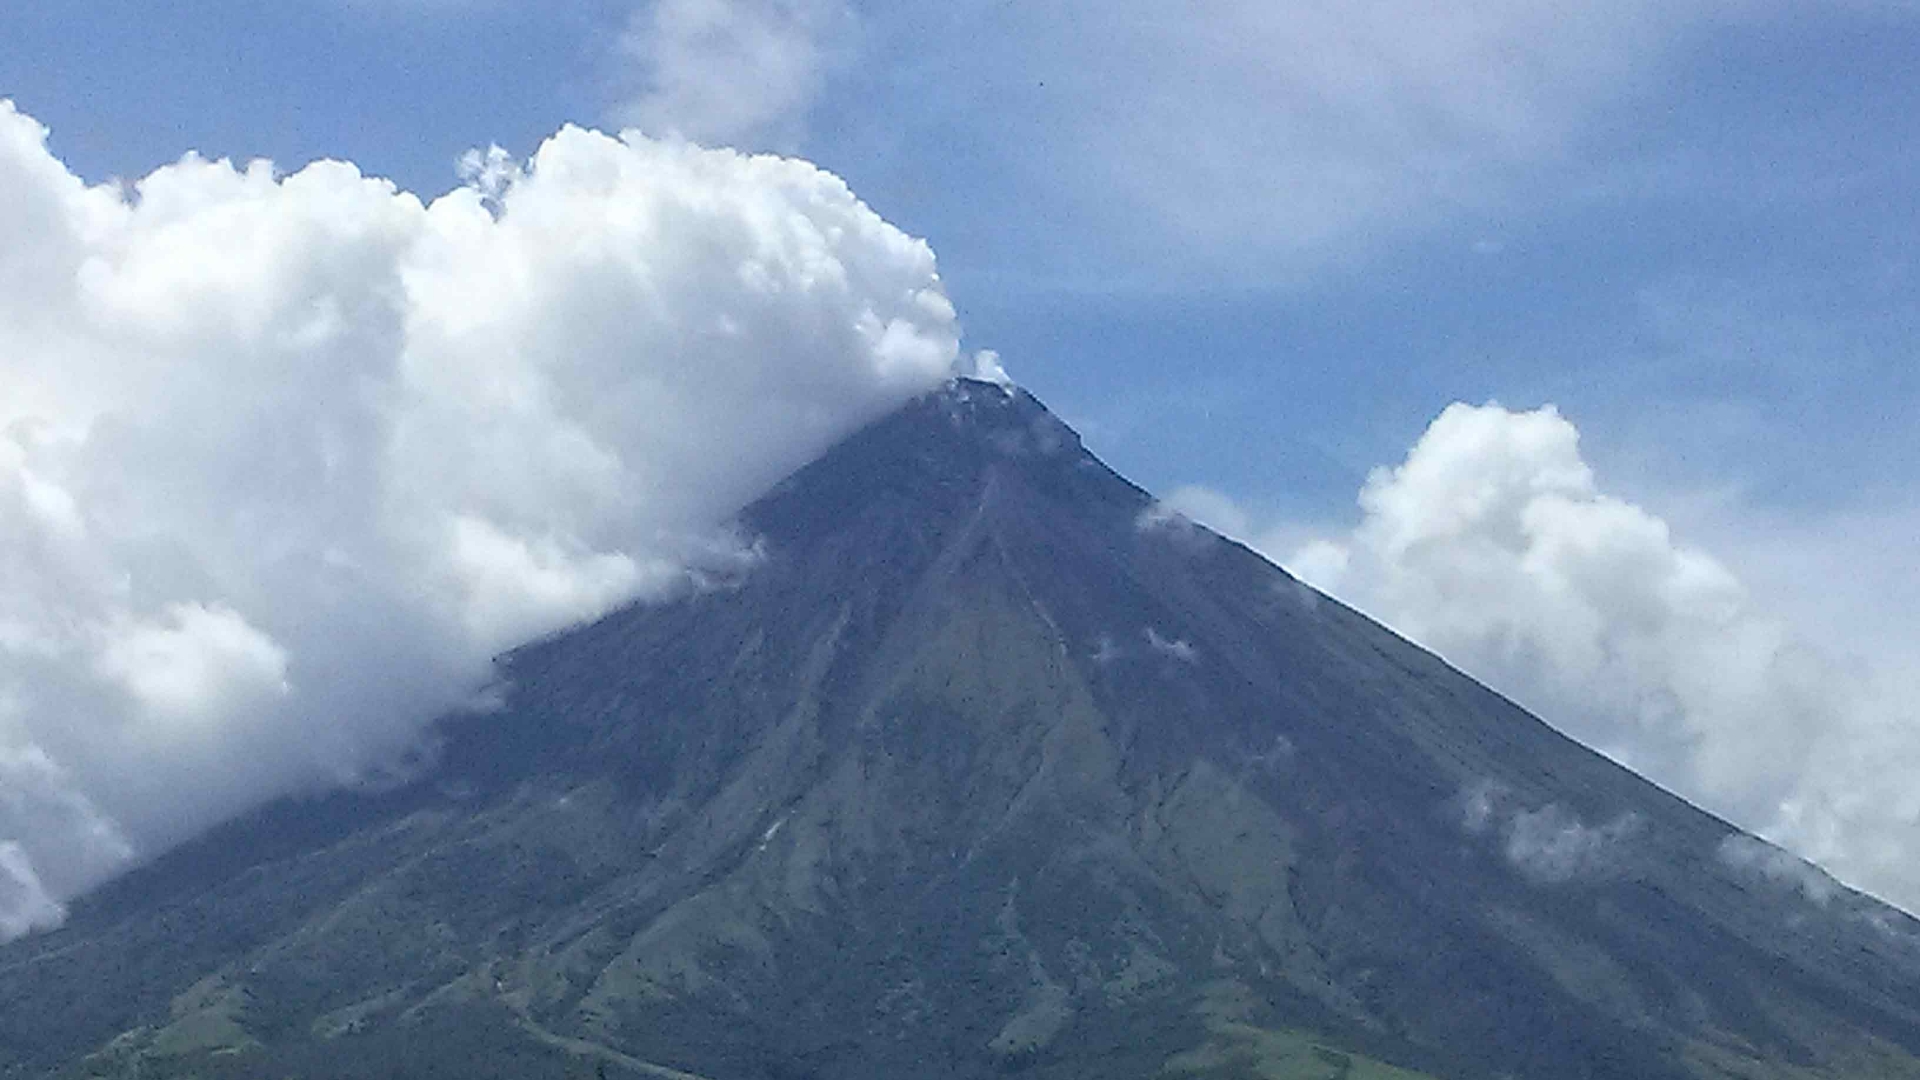 Mayon is spewing white smoke, alerting Albay.